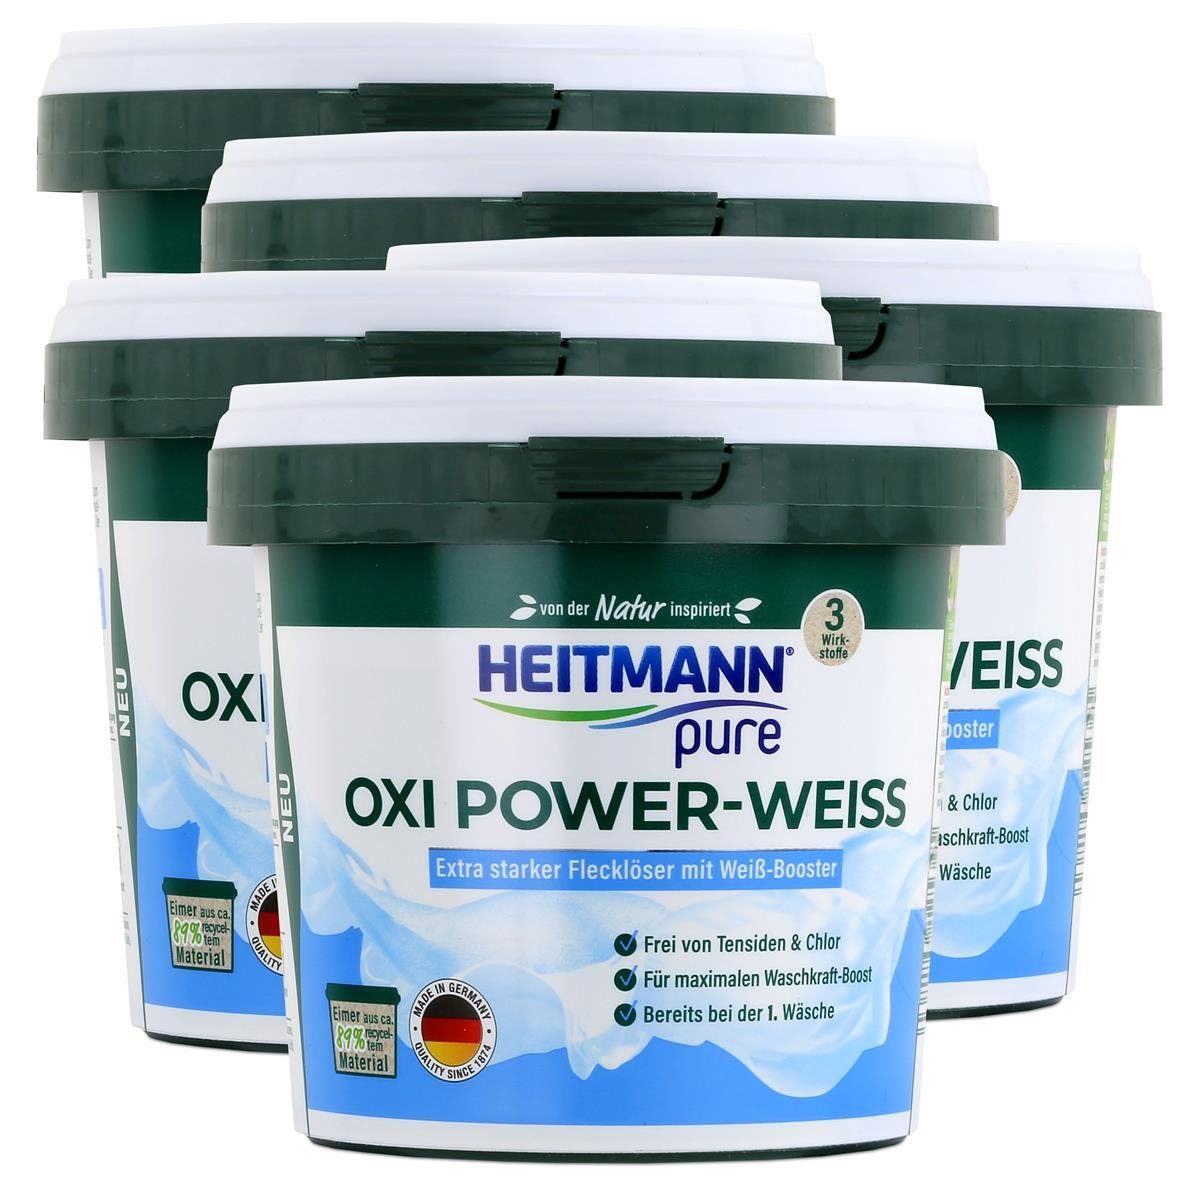 HEITMANN Heitmann pure Oxi Power-Weiss 500g - Flecklöser mit Weiß-Booster (5er Vollwaschmittel